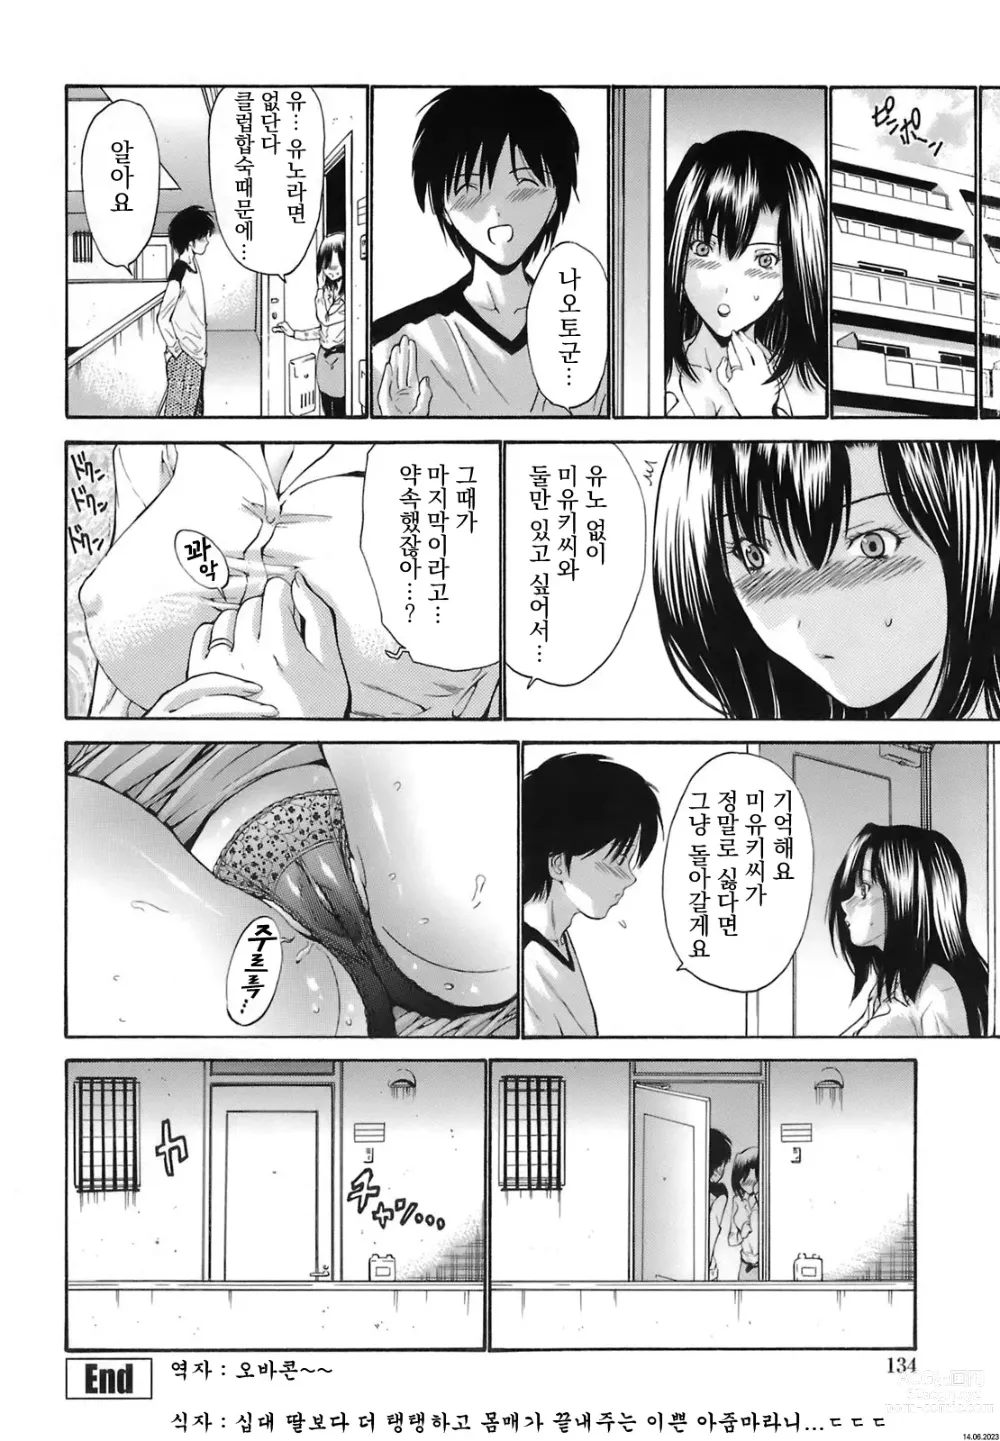 Page 16 of manga kanojo no haha -Zenpen-